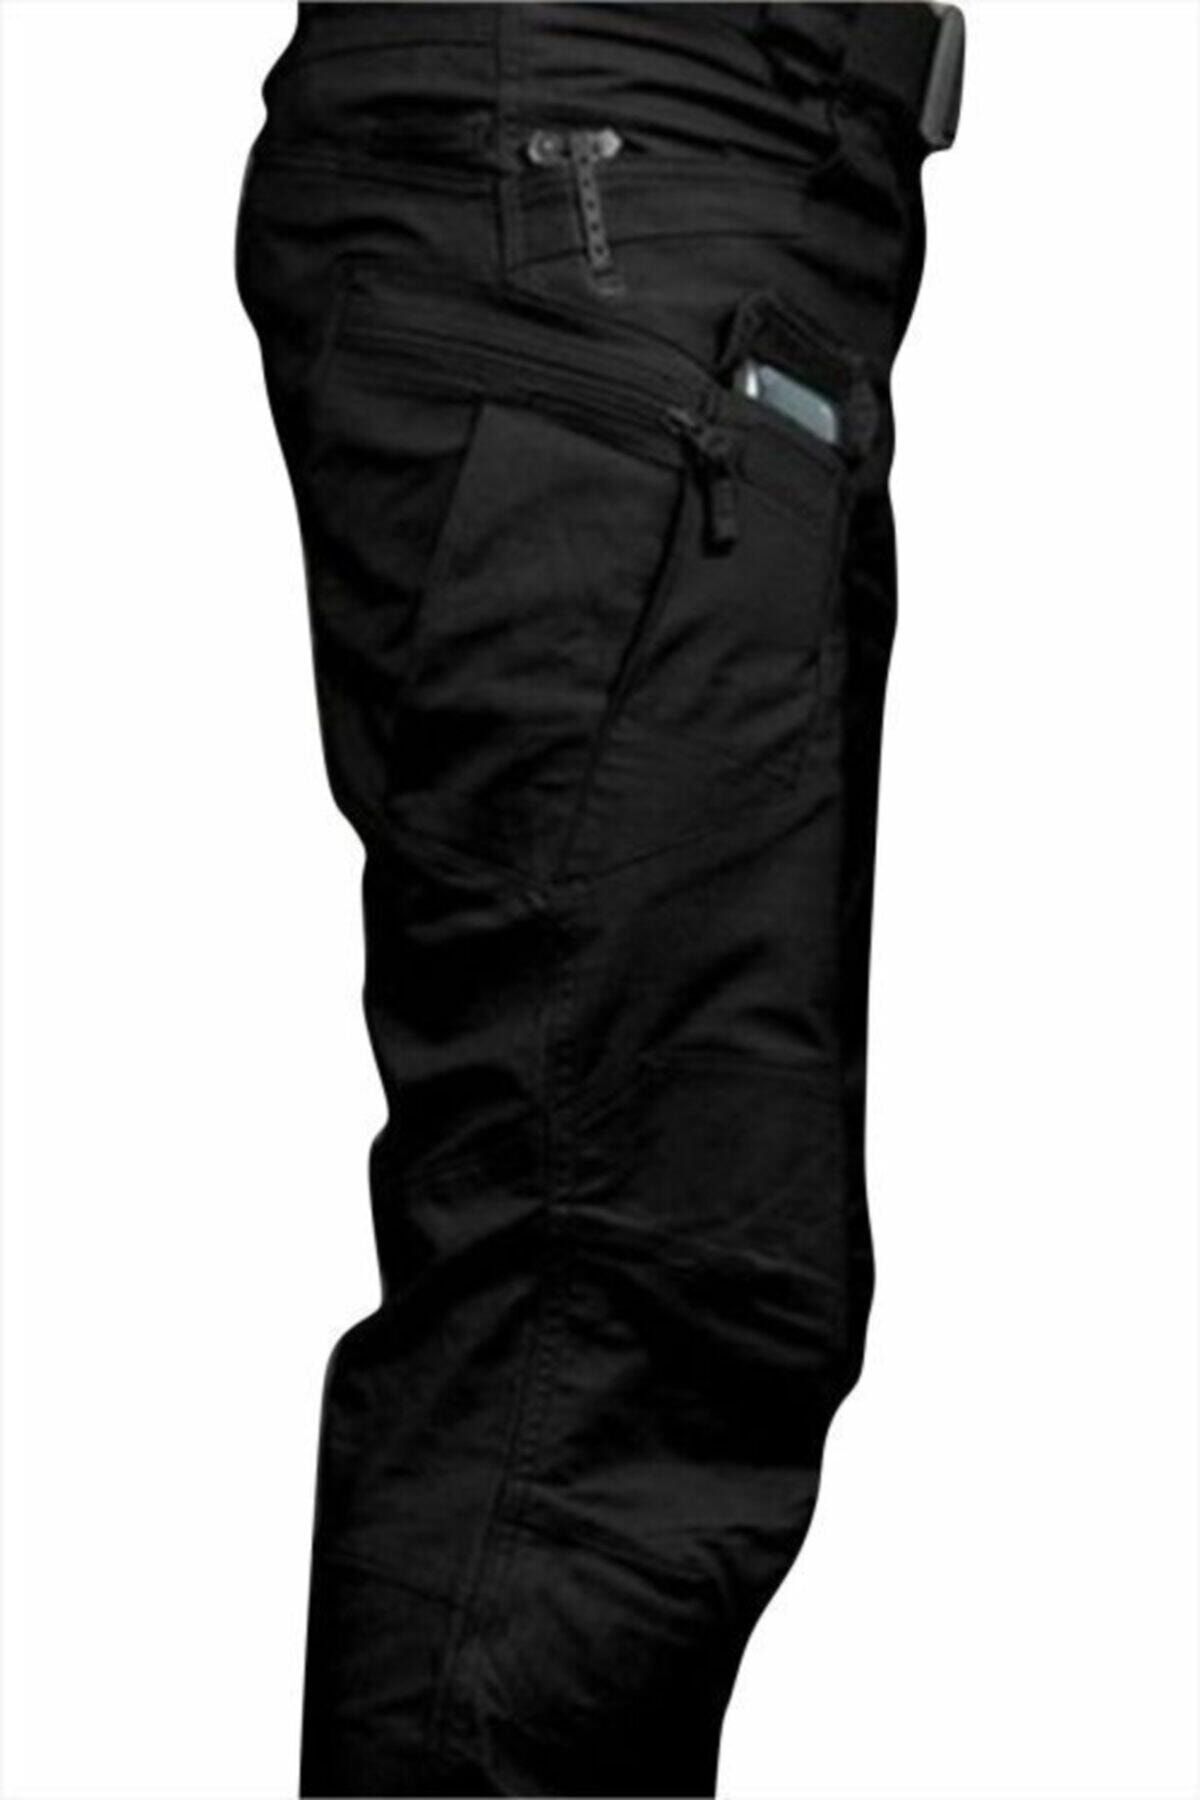 BAŞARI TAKTİKAL Unisex Tactical Outdoor Pantolon Siyah